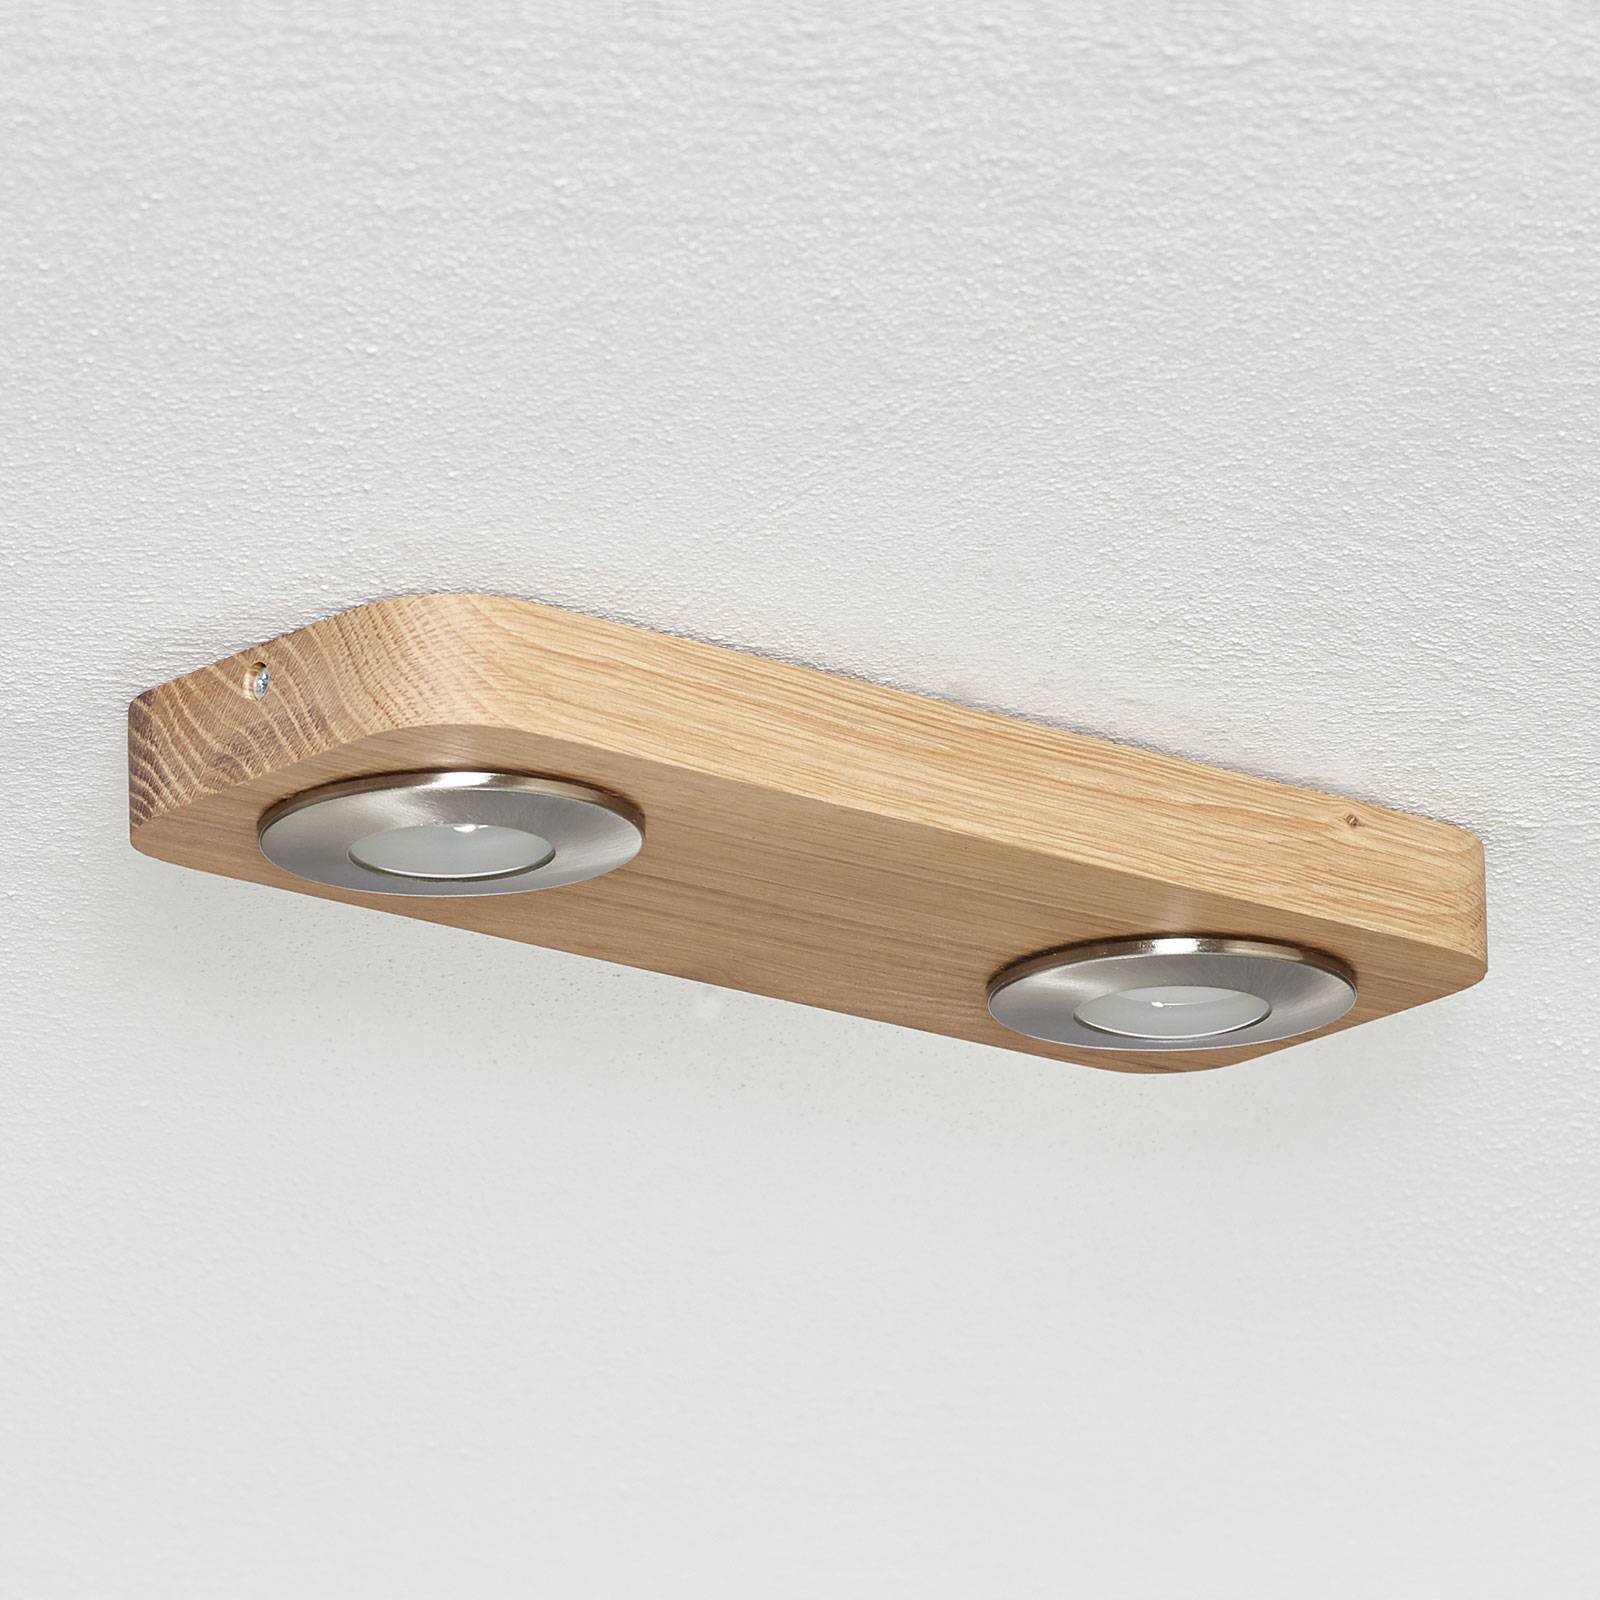 LED-Deckenlampe Sunniva in natürlichem Holz-Design von Spot-Light